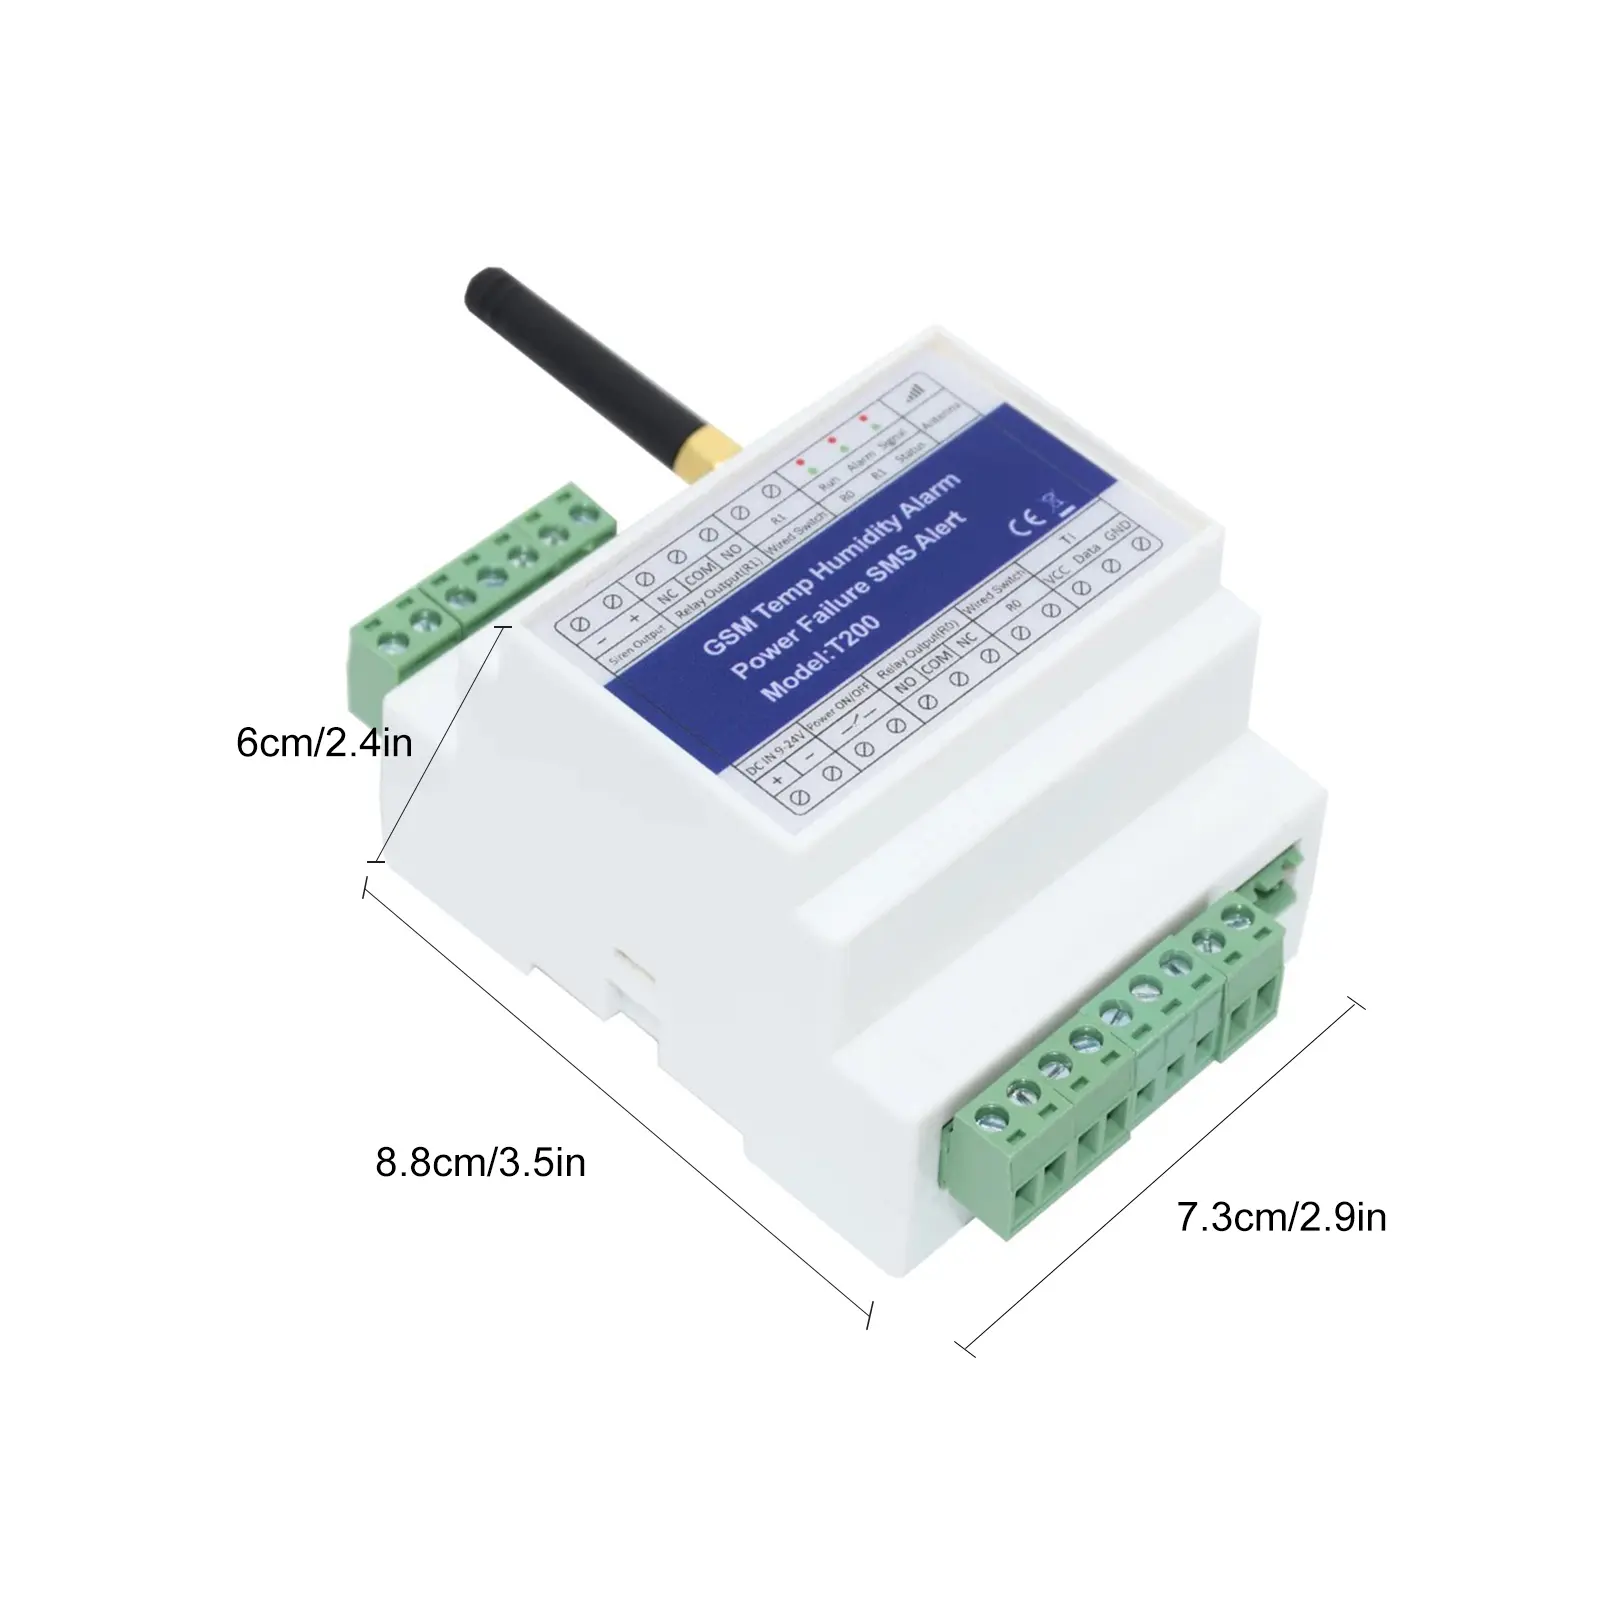 GSM ambiente sistema di allarme T200 modello 2G chiamata gratuita Wireless controllo remoto 200 numero autorizzato GSM temperatura umidità SMS allarme